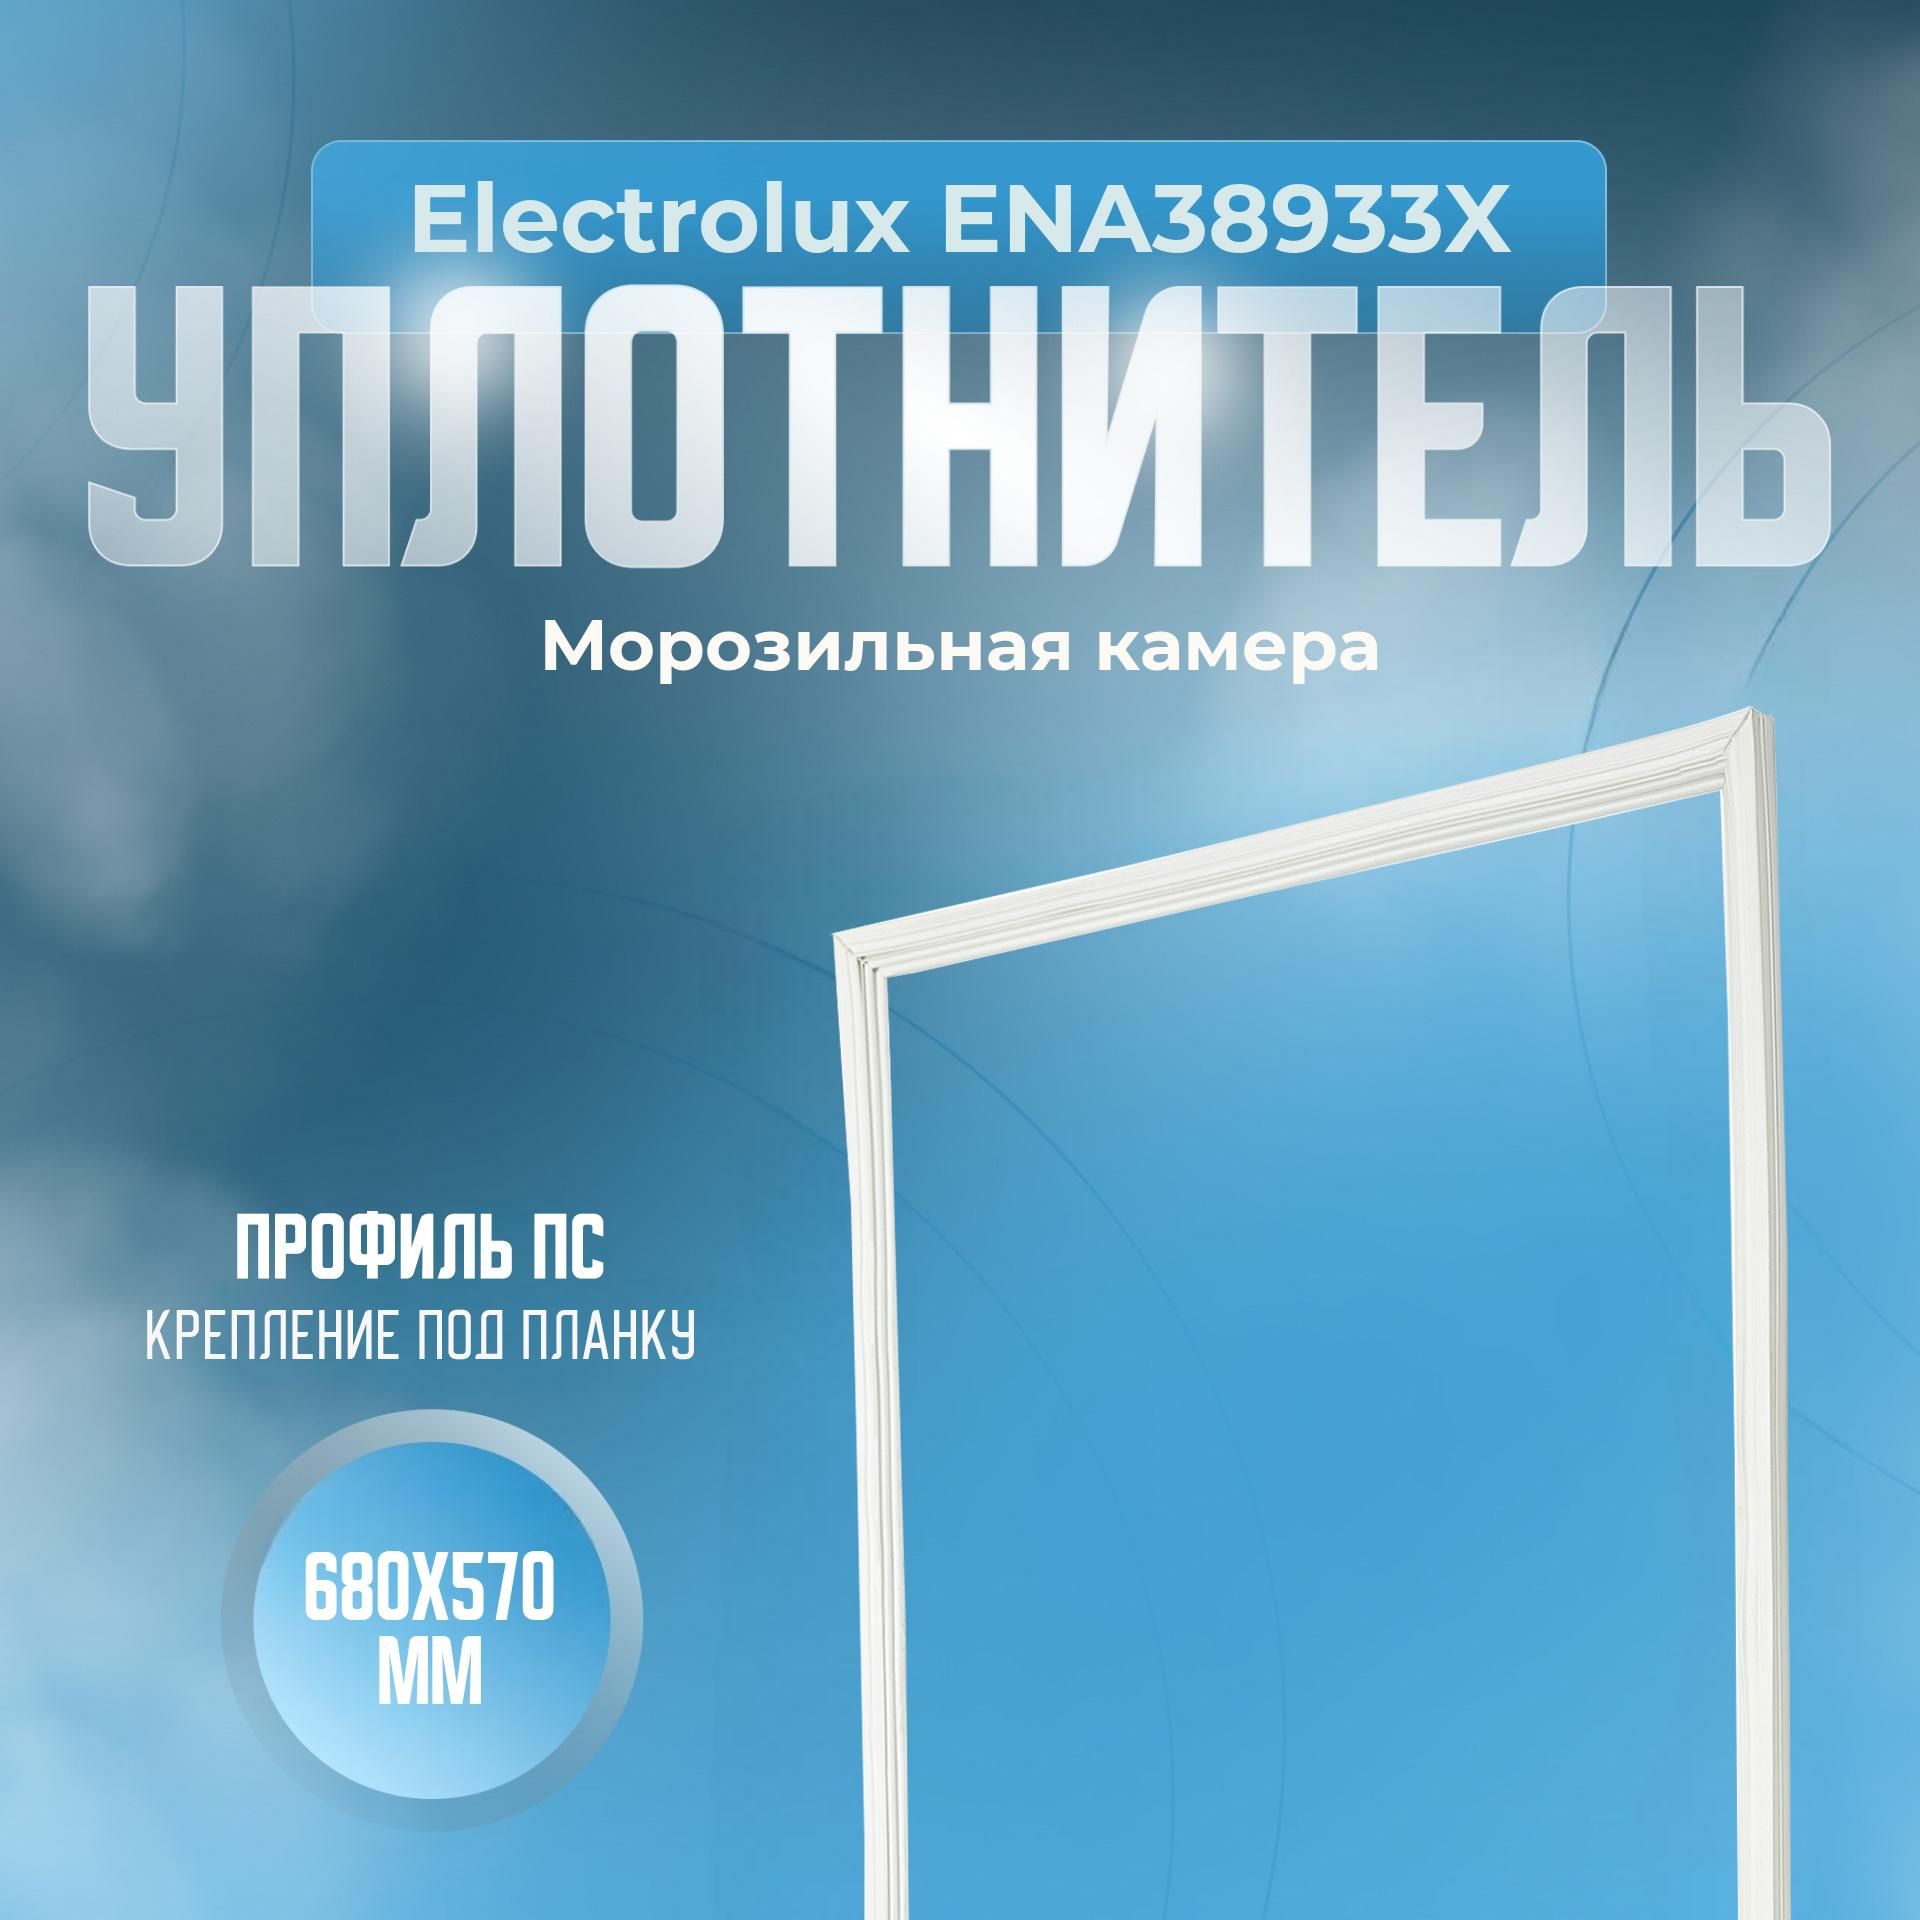 УплотнительдляхолодильникаElectrolux(Электролюкс)ENA38933X.(Морозильнаякамера),Размер-680х570мм.ПС